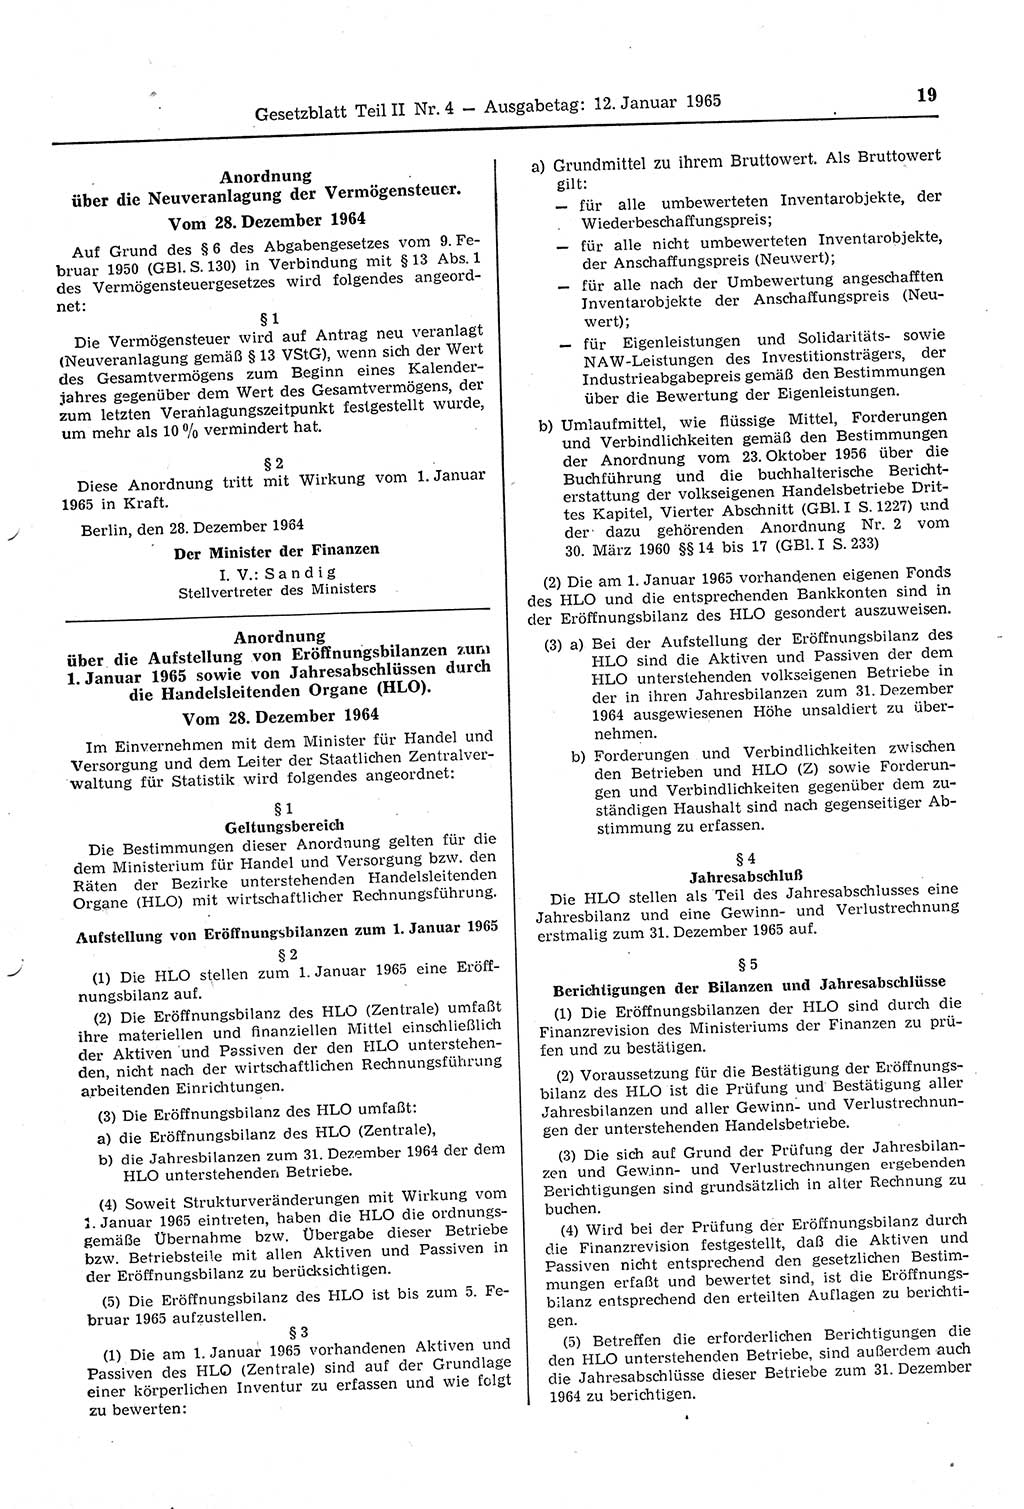 Gesetzblatt (GBl.) der Deutschen Demokratischen Republik (DDR) Teil ⅠⅠ 1965, Seite 19 (GBl. DDR ⅠⅠ 1965, S. 19)